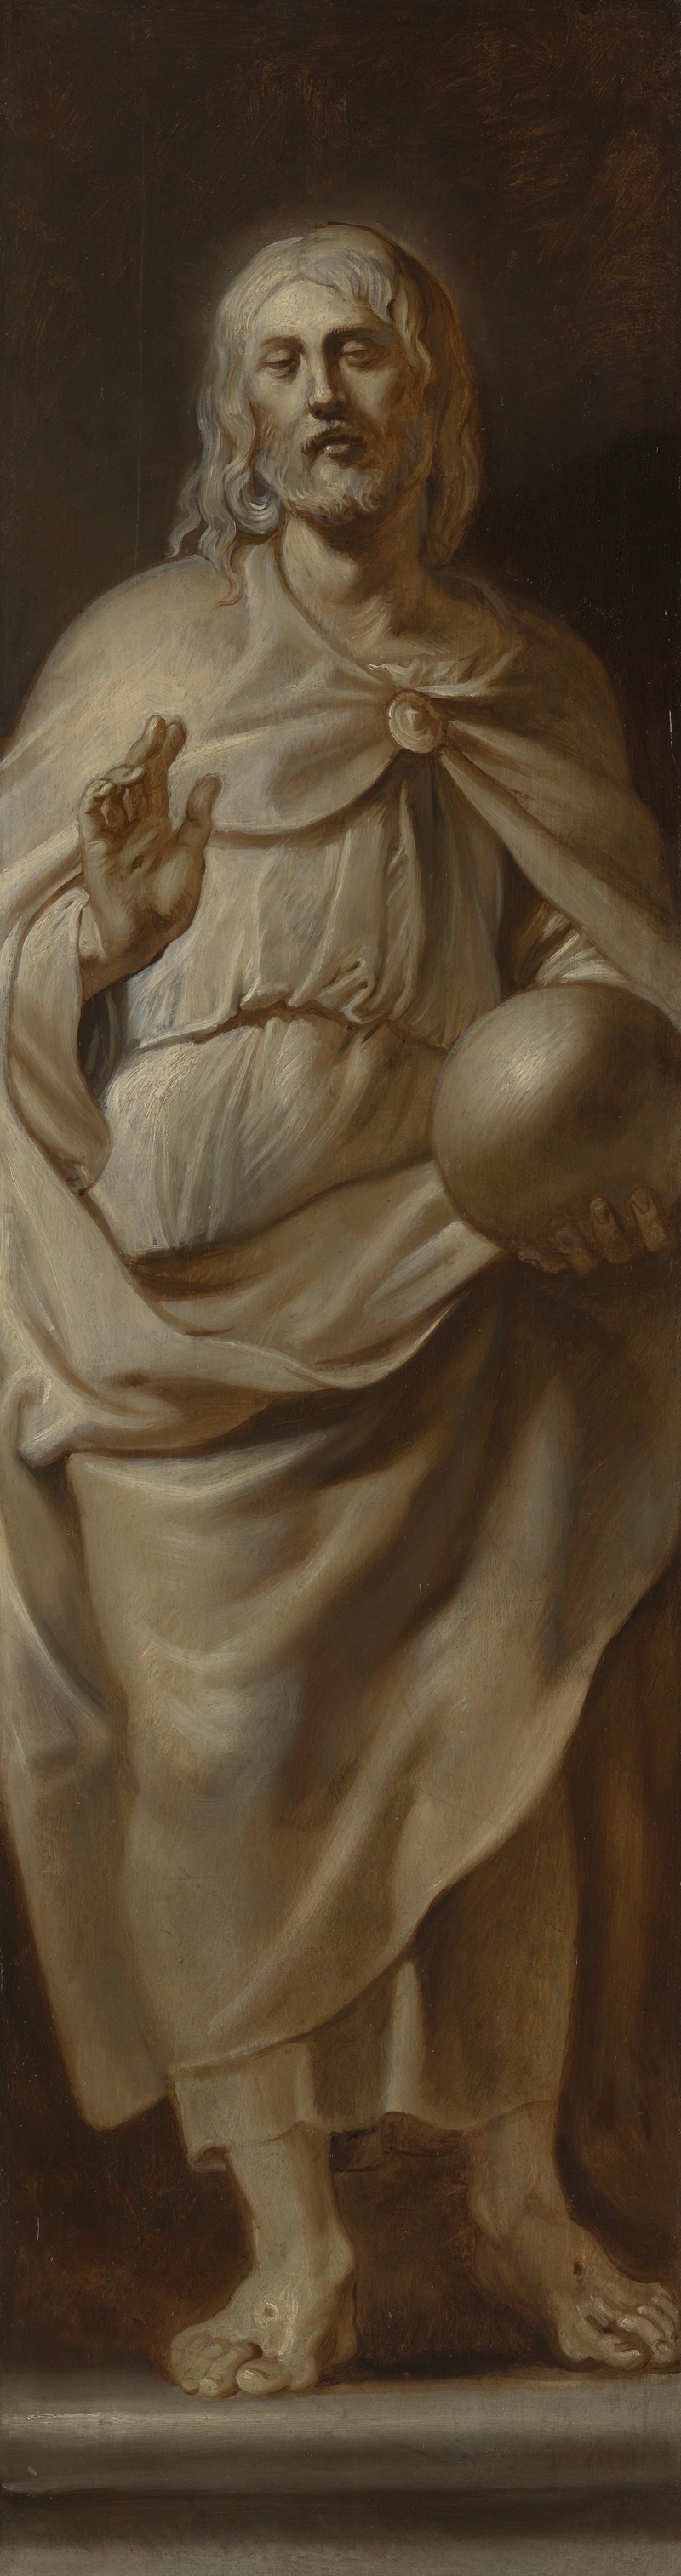 Peter Paul Rubens - Christ Salvator Mundi